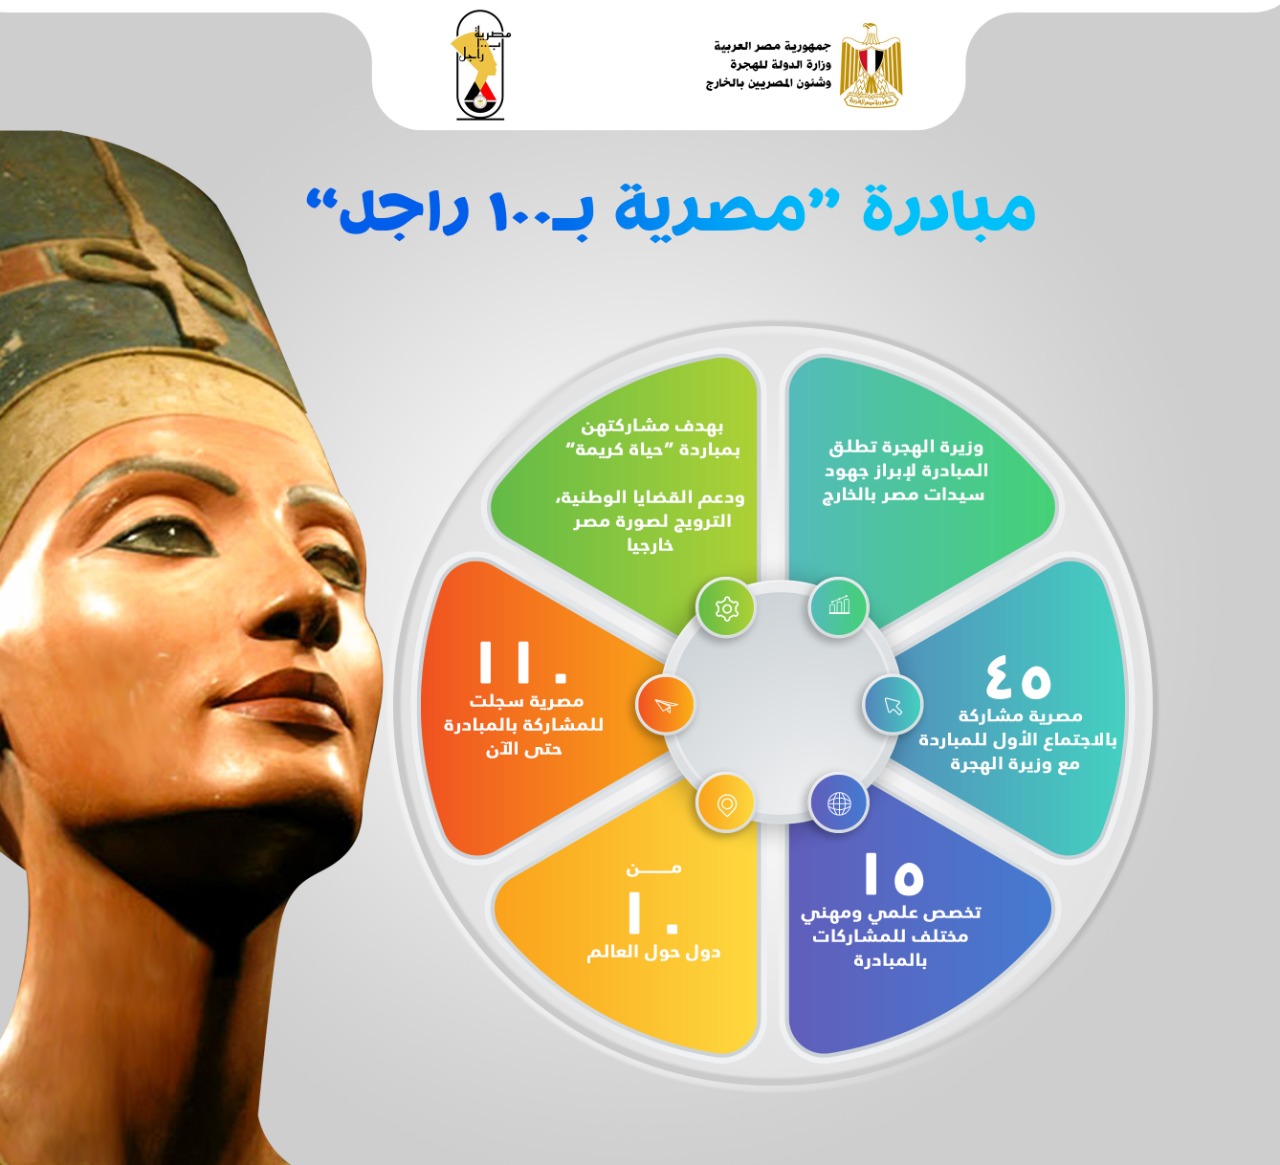 وزارة الهجرة تعلن عن عدد المشاركات بمبادرة “مصرية بـ100 راجل”